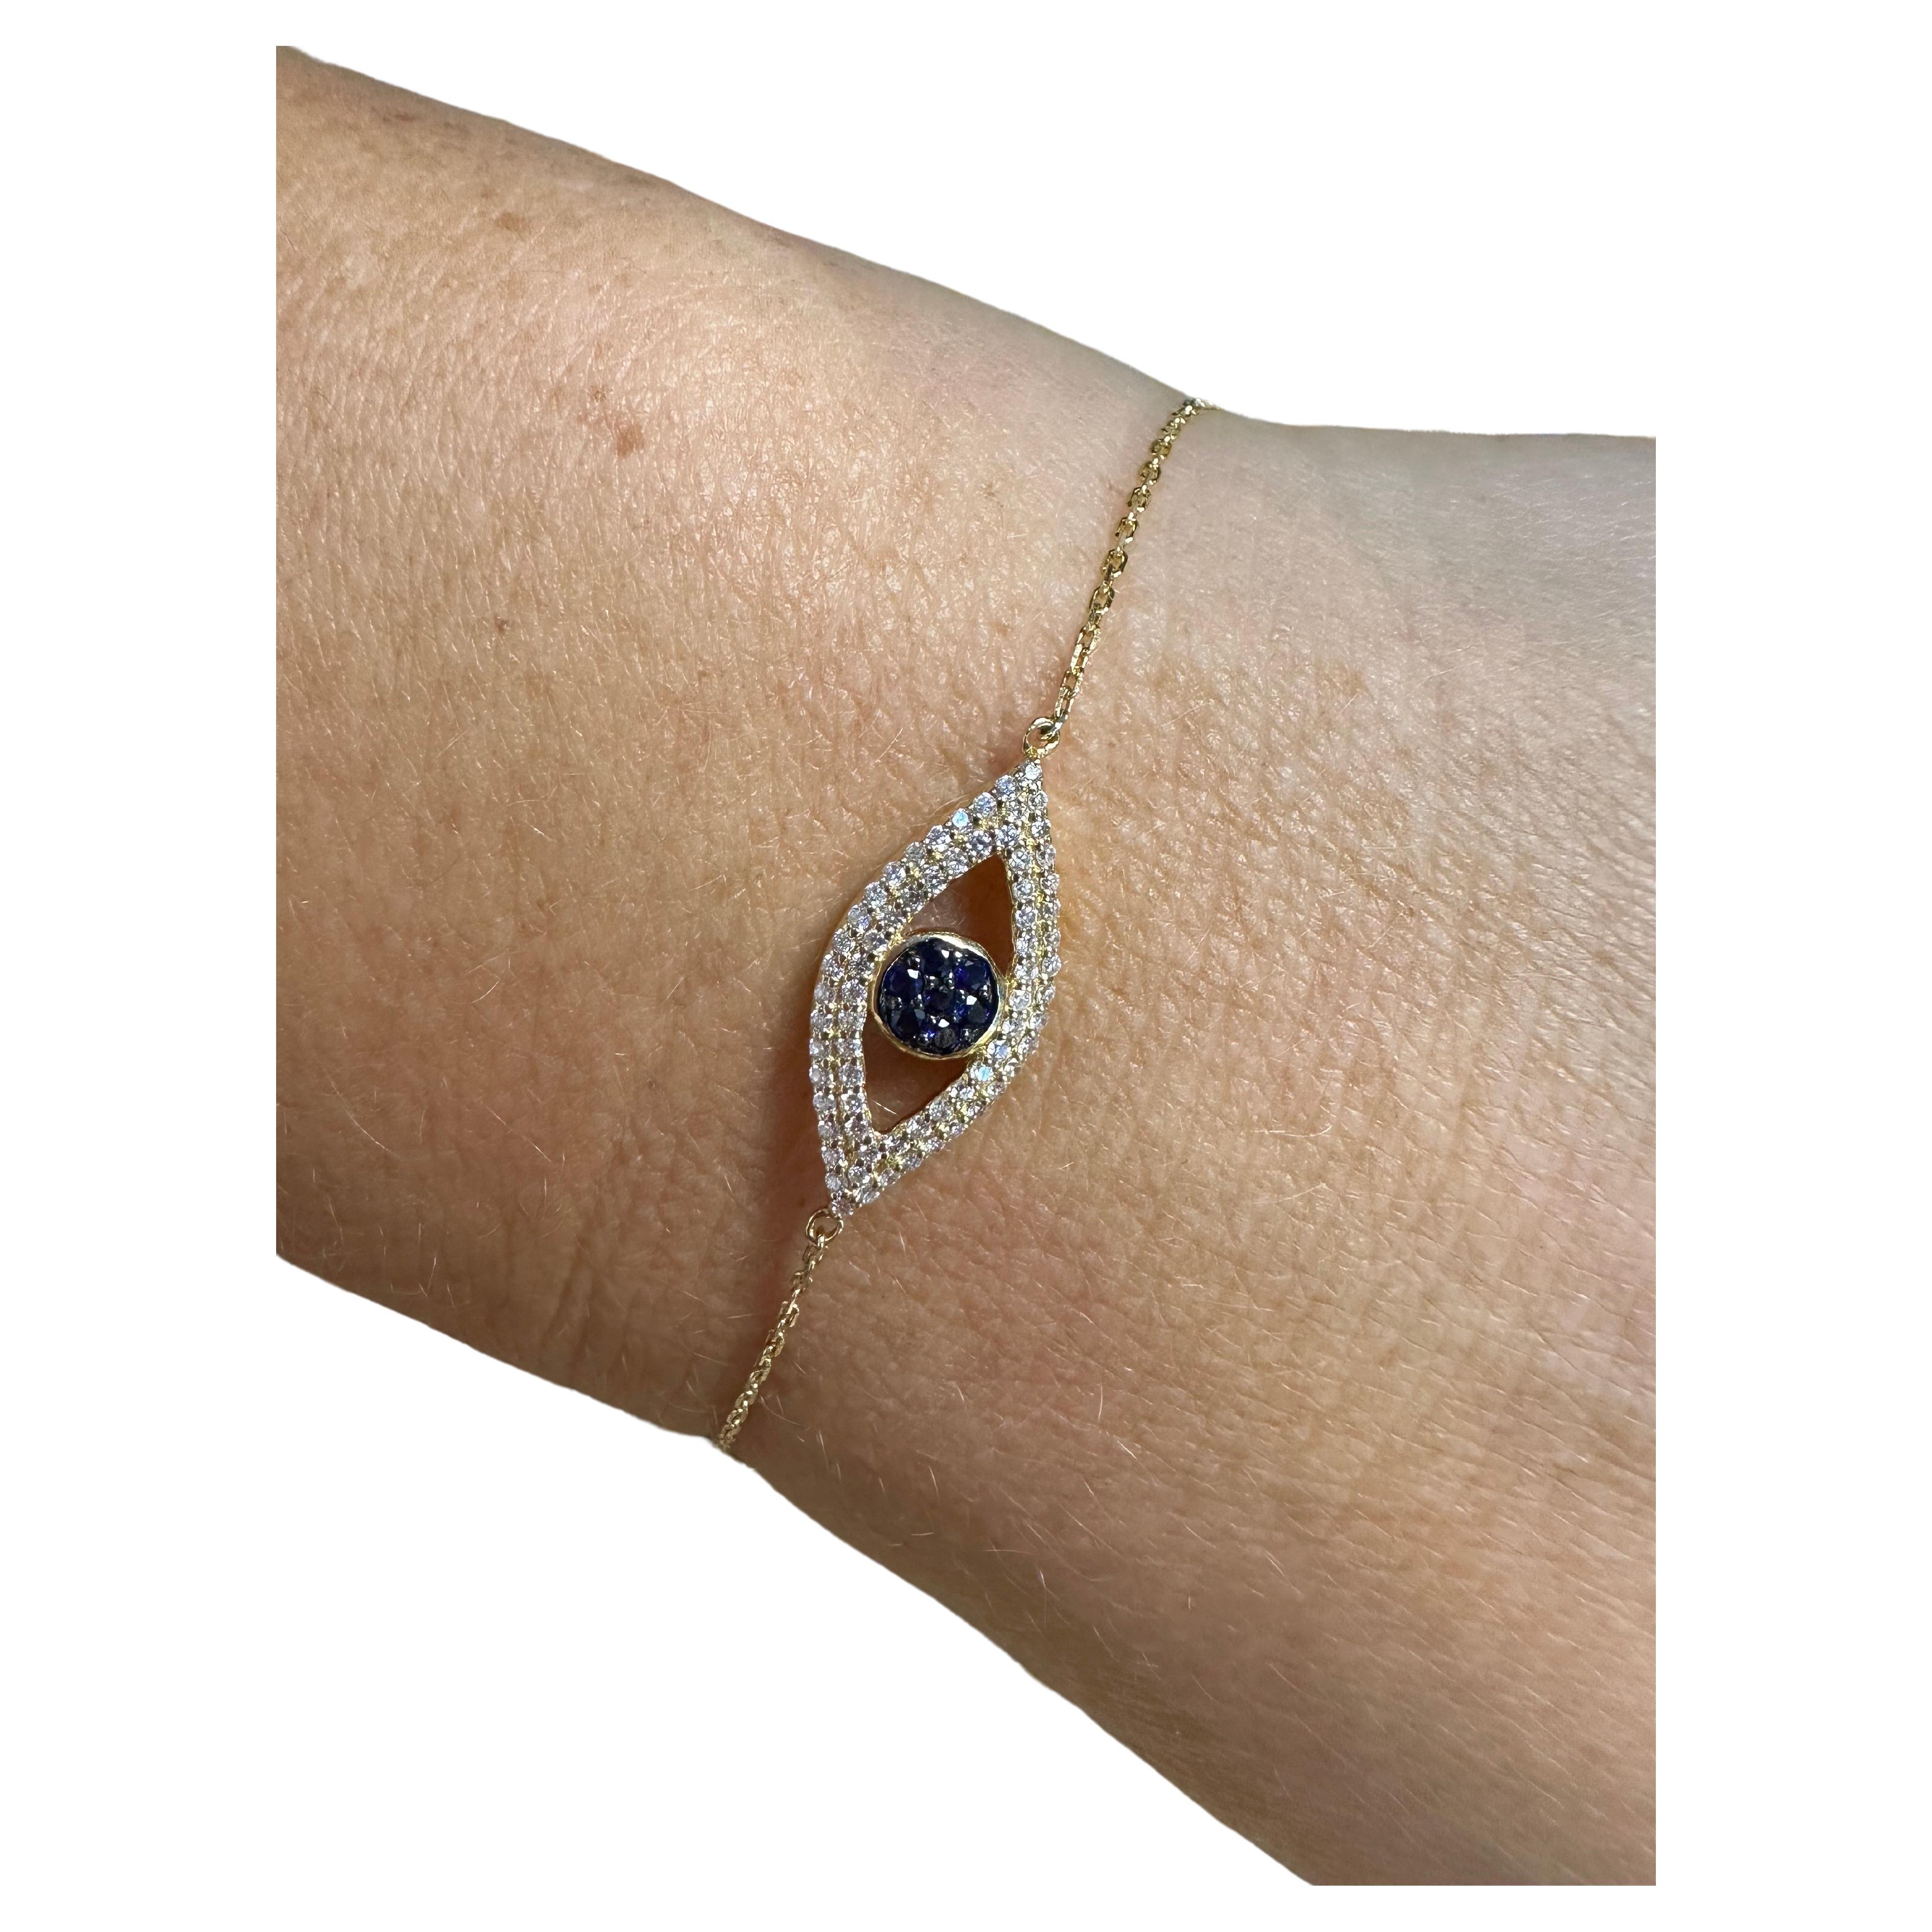 Zierliches Evil Eye Diamantarmband aus 14KT Gold.

Metall Typ: 14KT
Kleine Saphire:0,10ct (natürlich)
Natürliche(r) Diamant(en): 
Farbe: F-G
Schliff:Runder Brillant
Karat: 0,25ct
Klarheit: VS-SI (Durchschnitt)
Artikel: T1400
Echtheitszertifikat wird